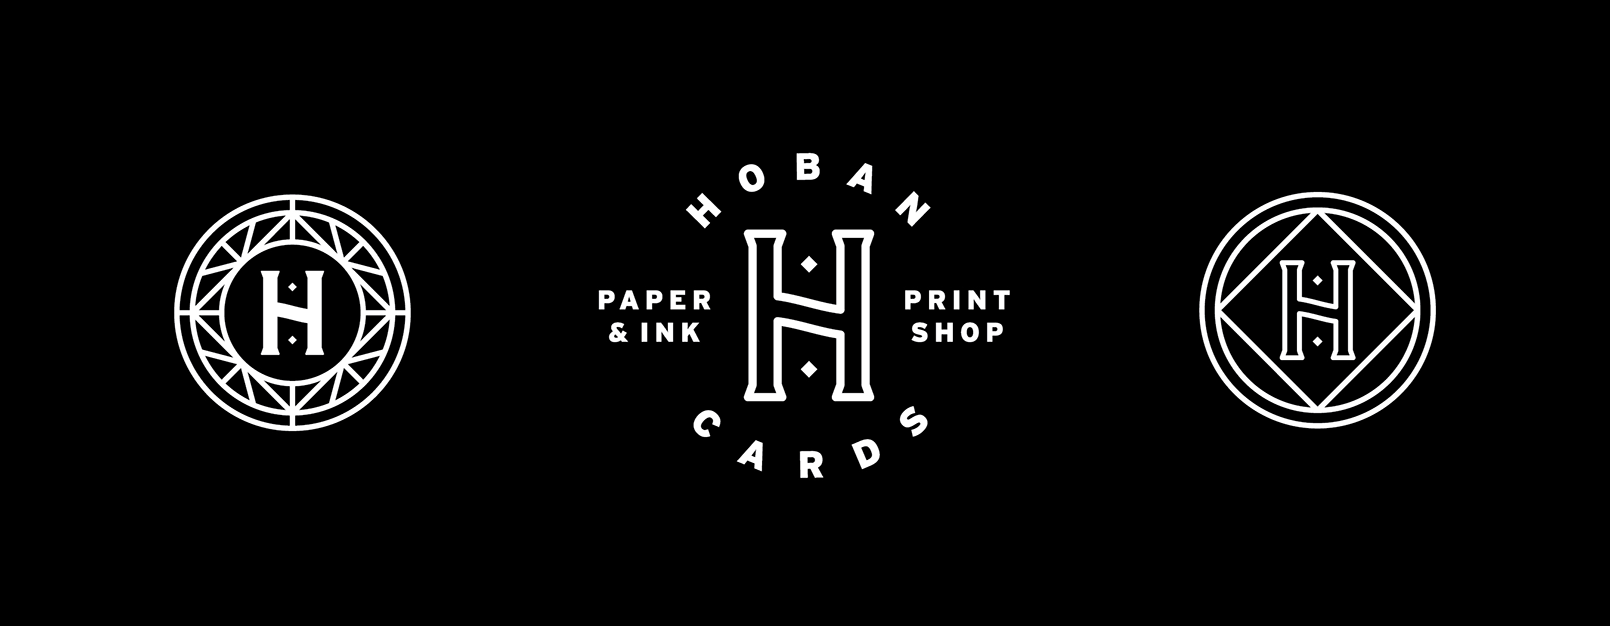 Hoban Cards